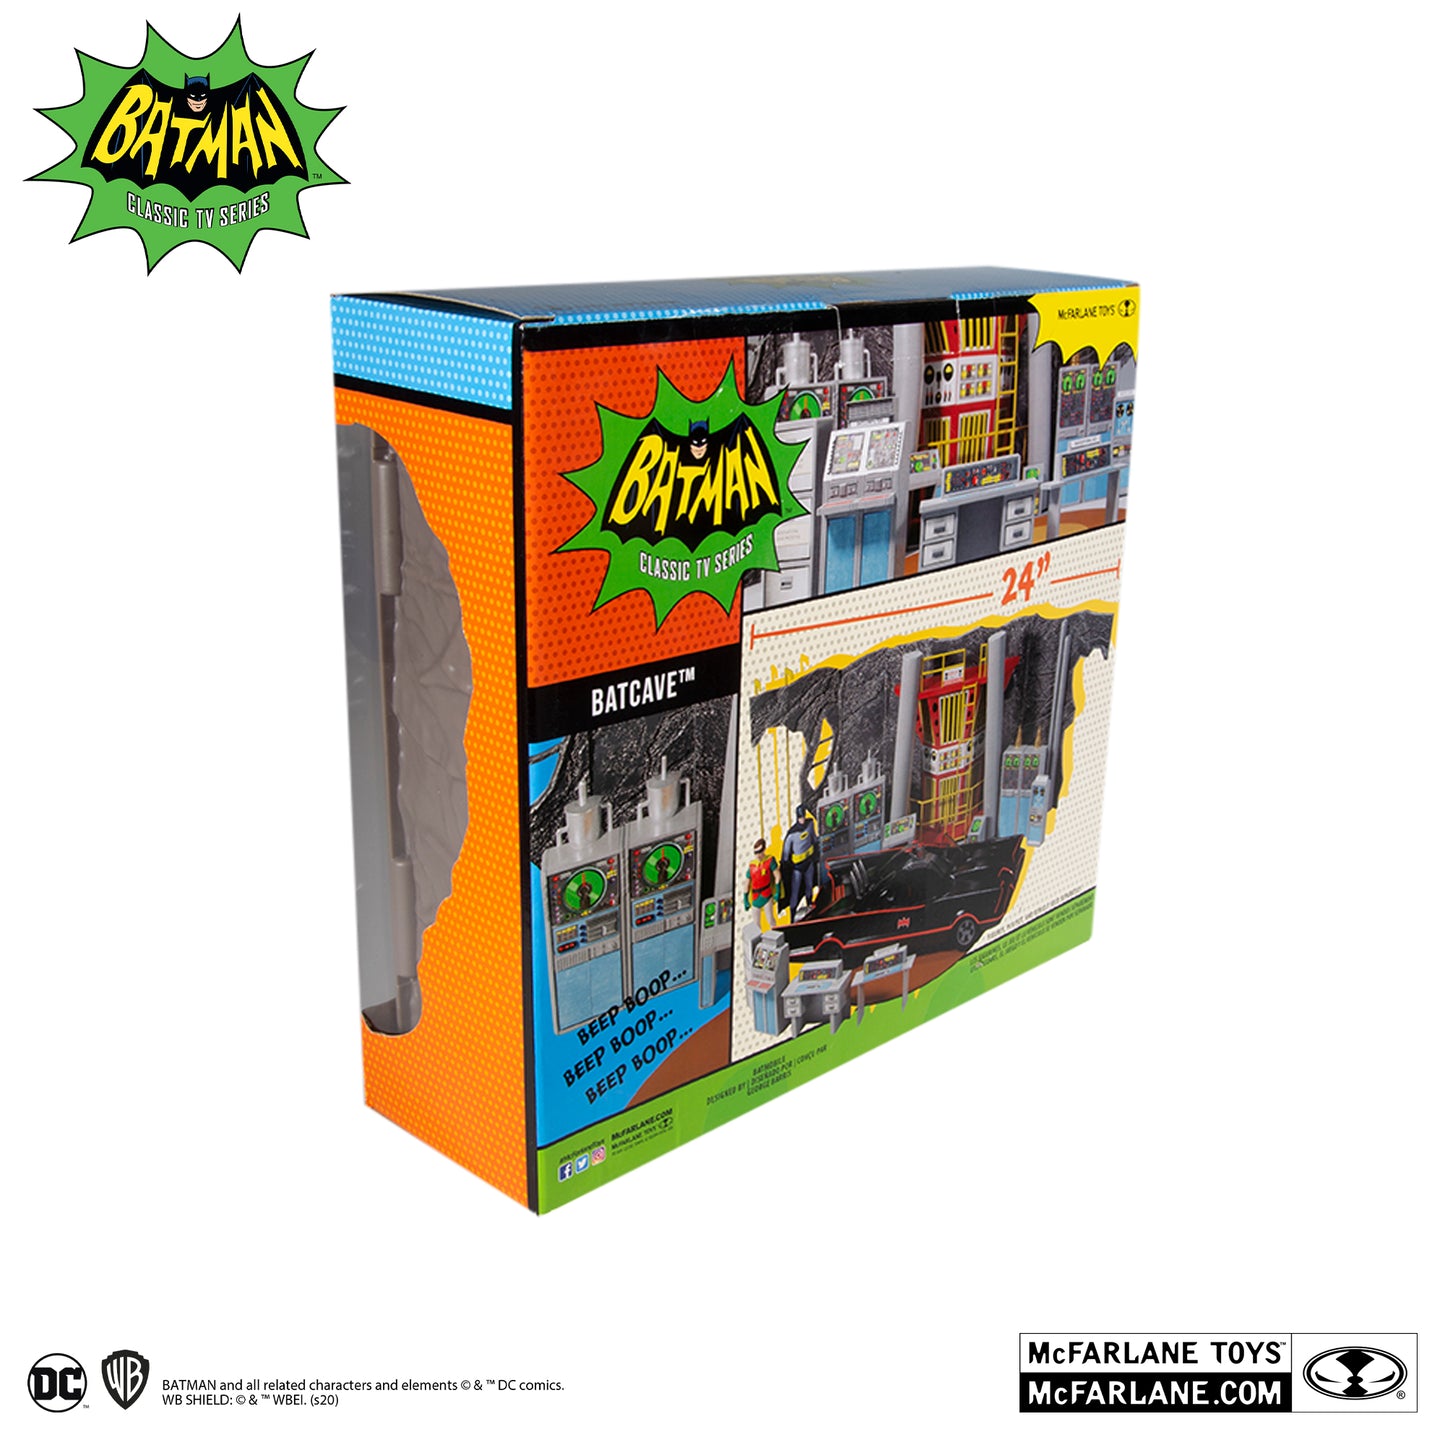 McFarlane Toys DC Retro Batman 66 Batcave Playset